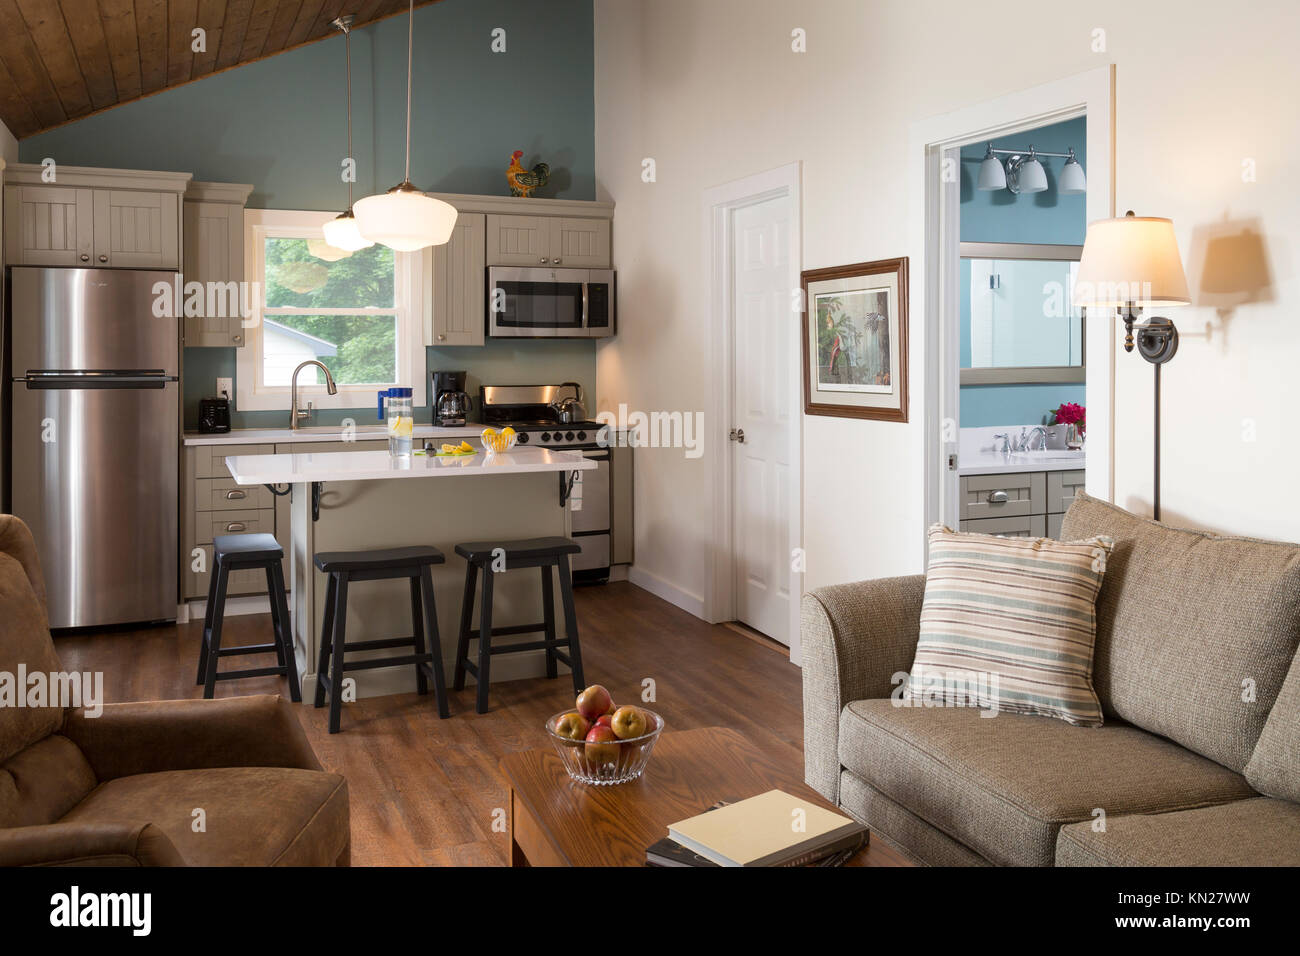 Küche, tolles Zimmer in Wohnung mit gestrichene Wand, Pennsylvania, USA, Stockfoto